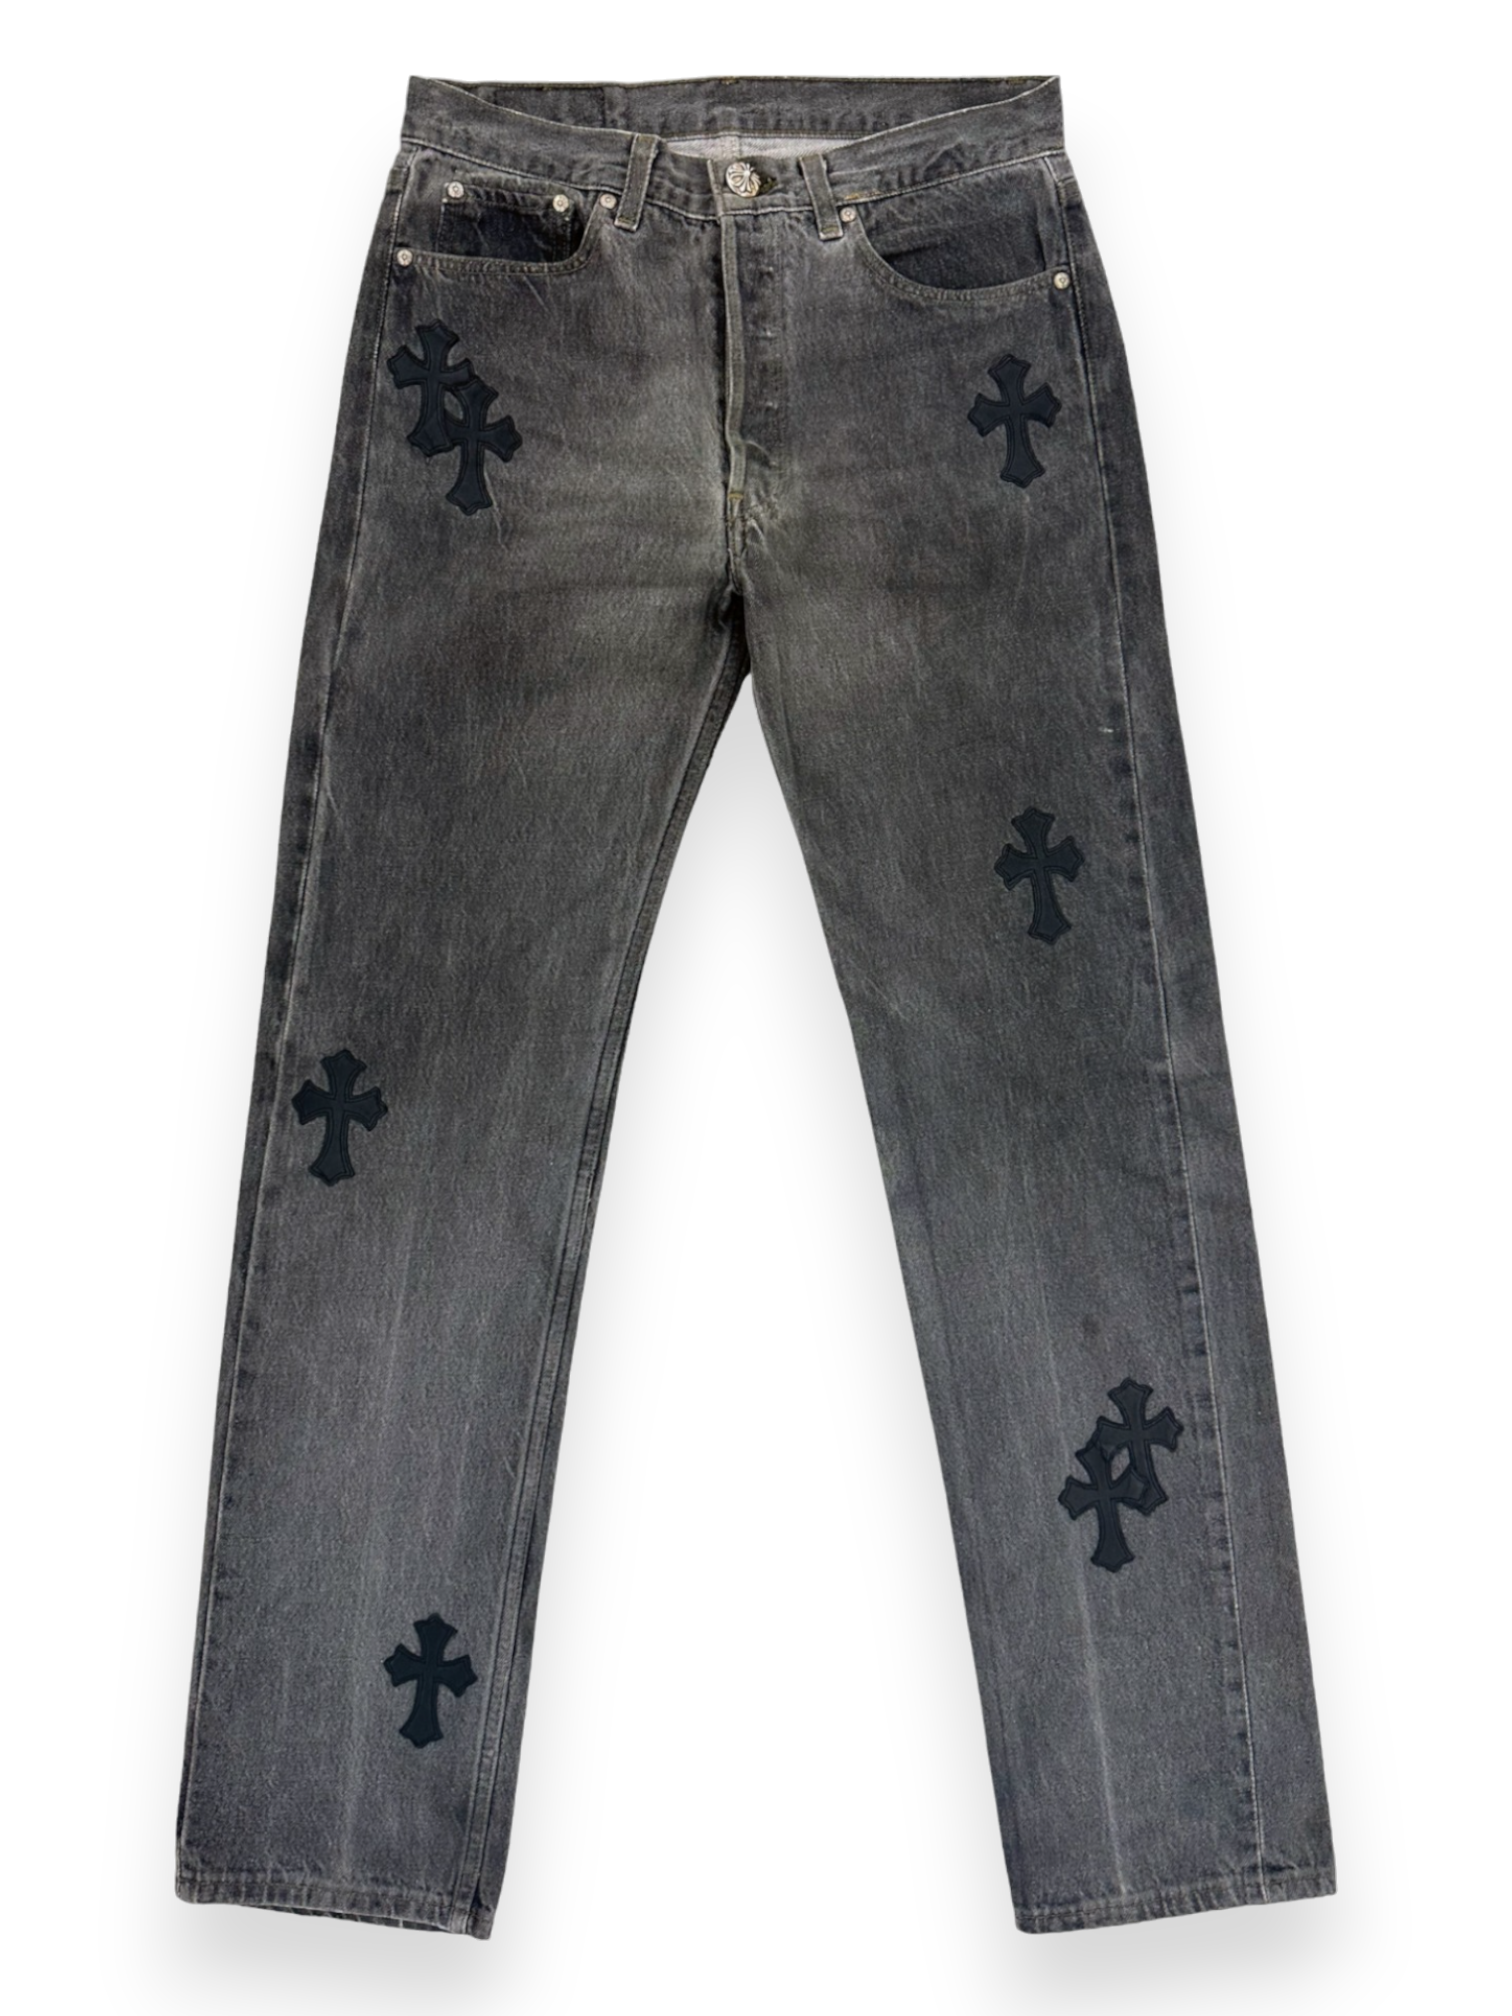 Chrome Hearts Cross Patch Levi’s Black Denim Jeans